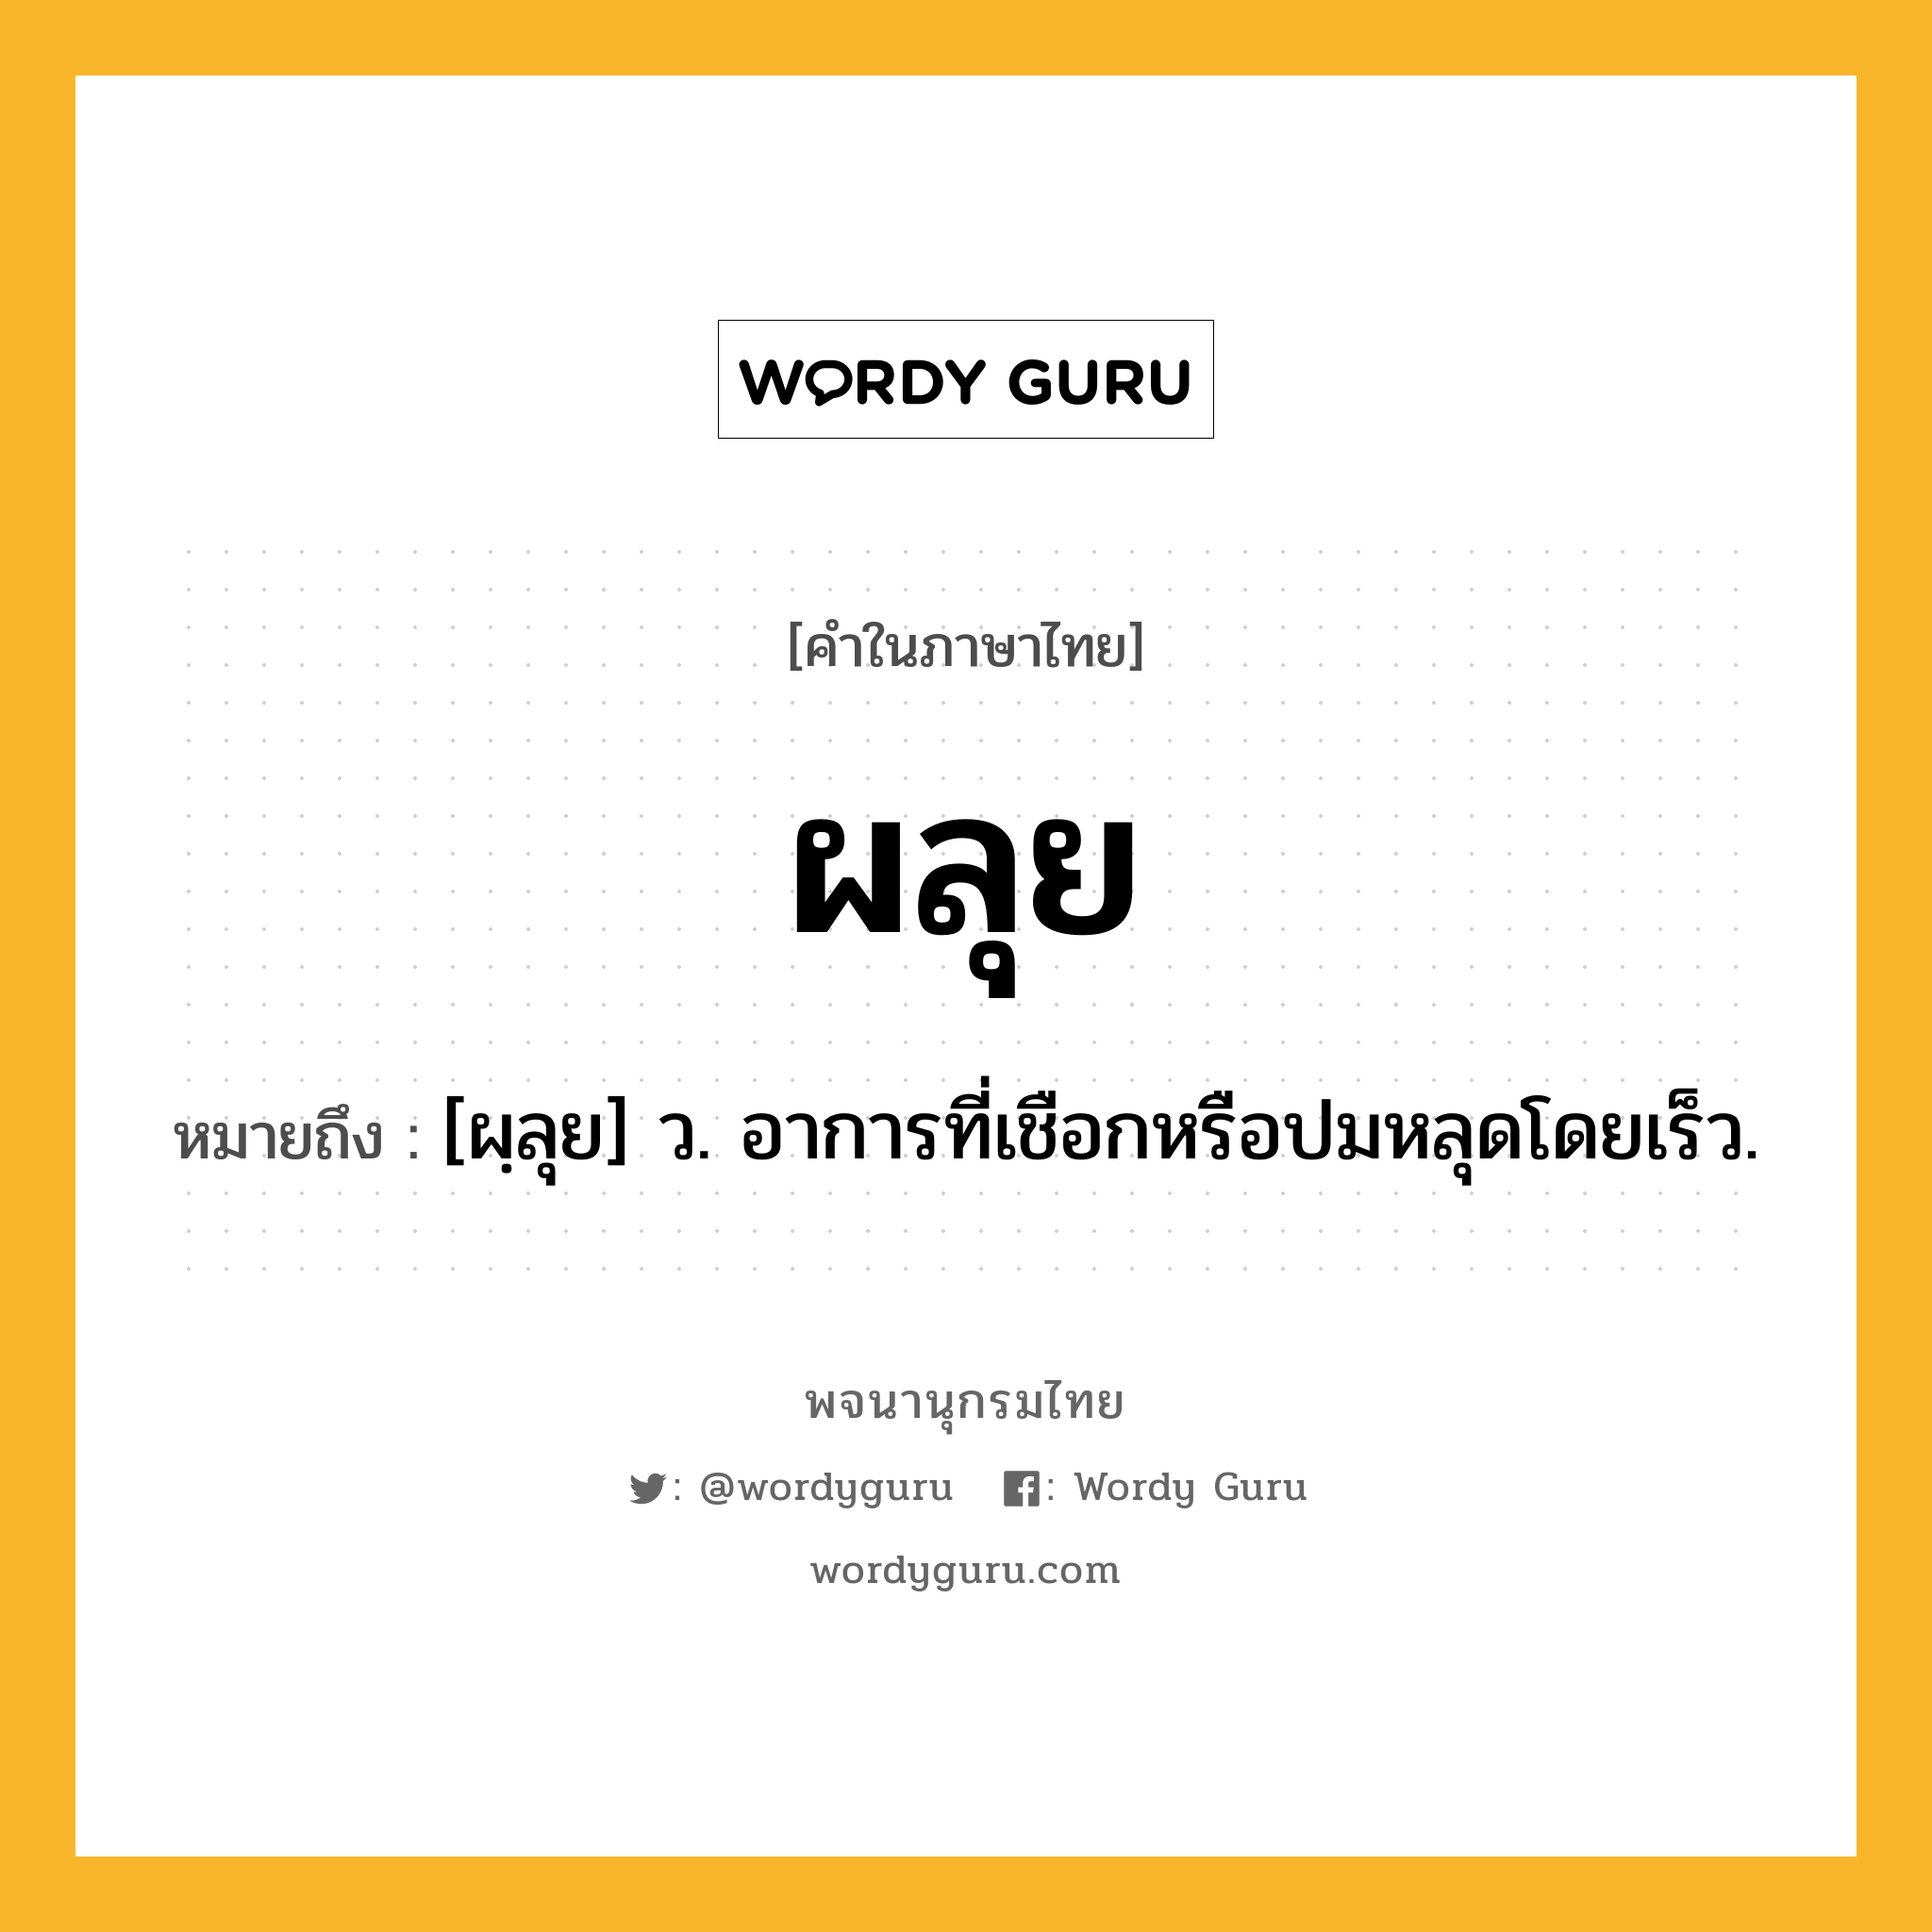 ผลุย ความหมาย หมายถึงอะไร?, คำในภาษาไทย ผลุย หมายถึง [ผฺลุย] ว. อาการที่เชือกหรือปมหลุดโดยเร็ว.